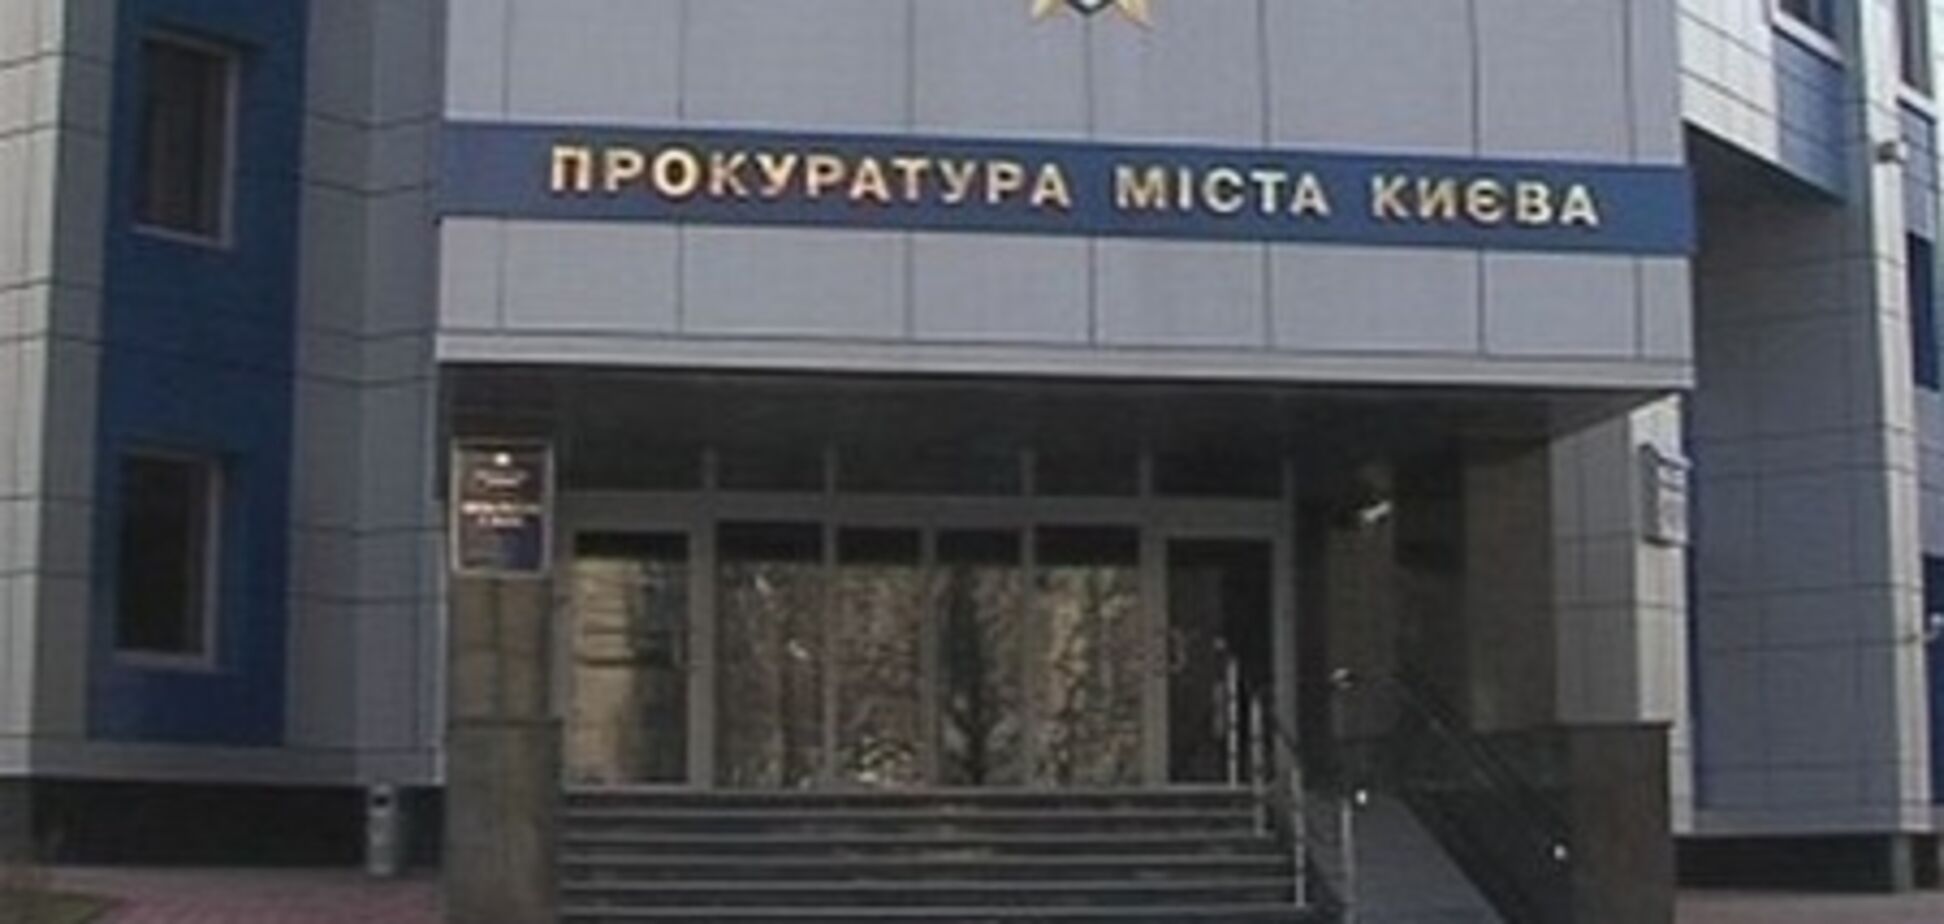 Прокуратура Киева не допустила растраты бюджетных средств